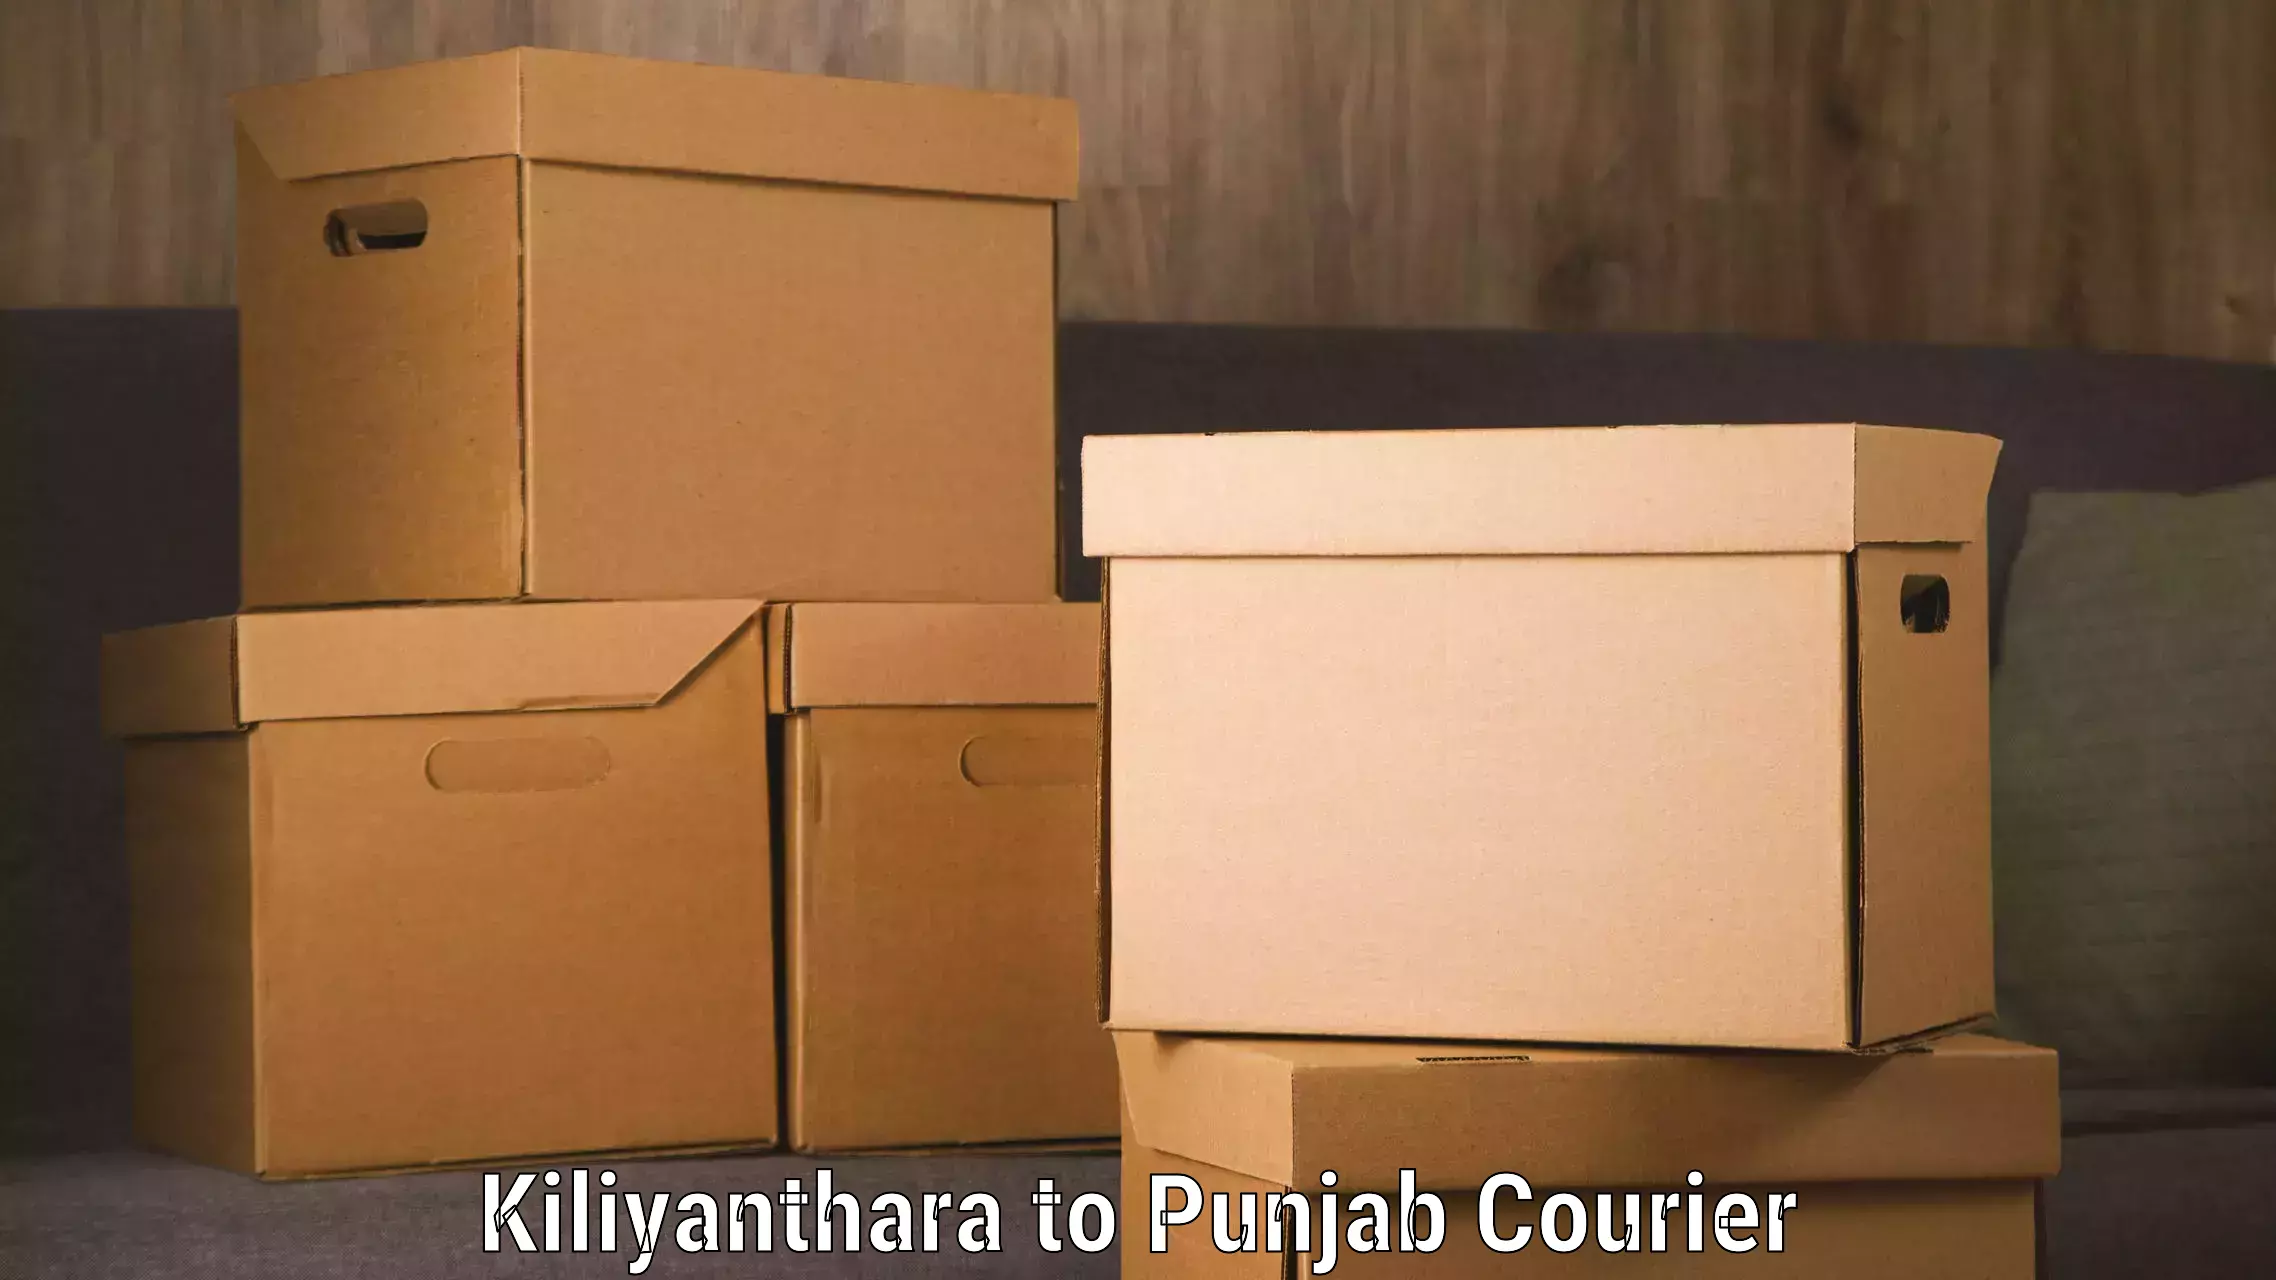 Courier service efficiency Kiliyanthara to Punjab